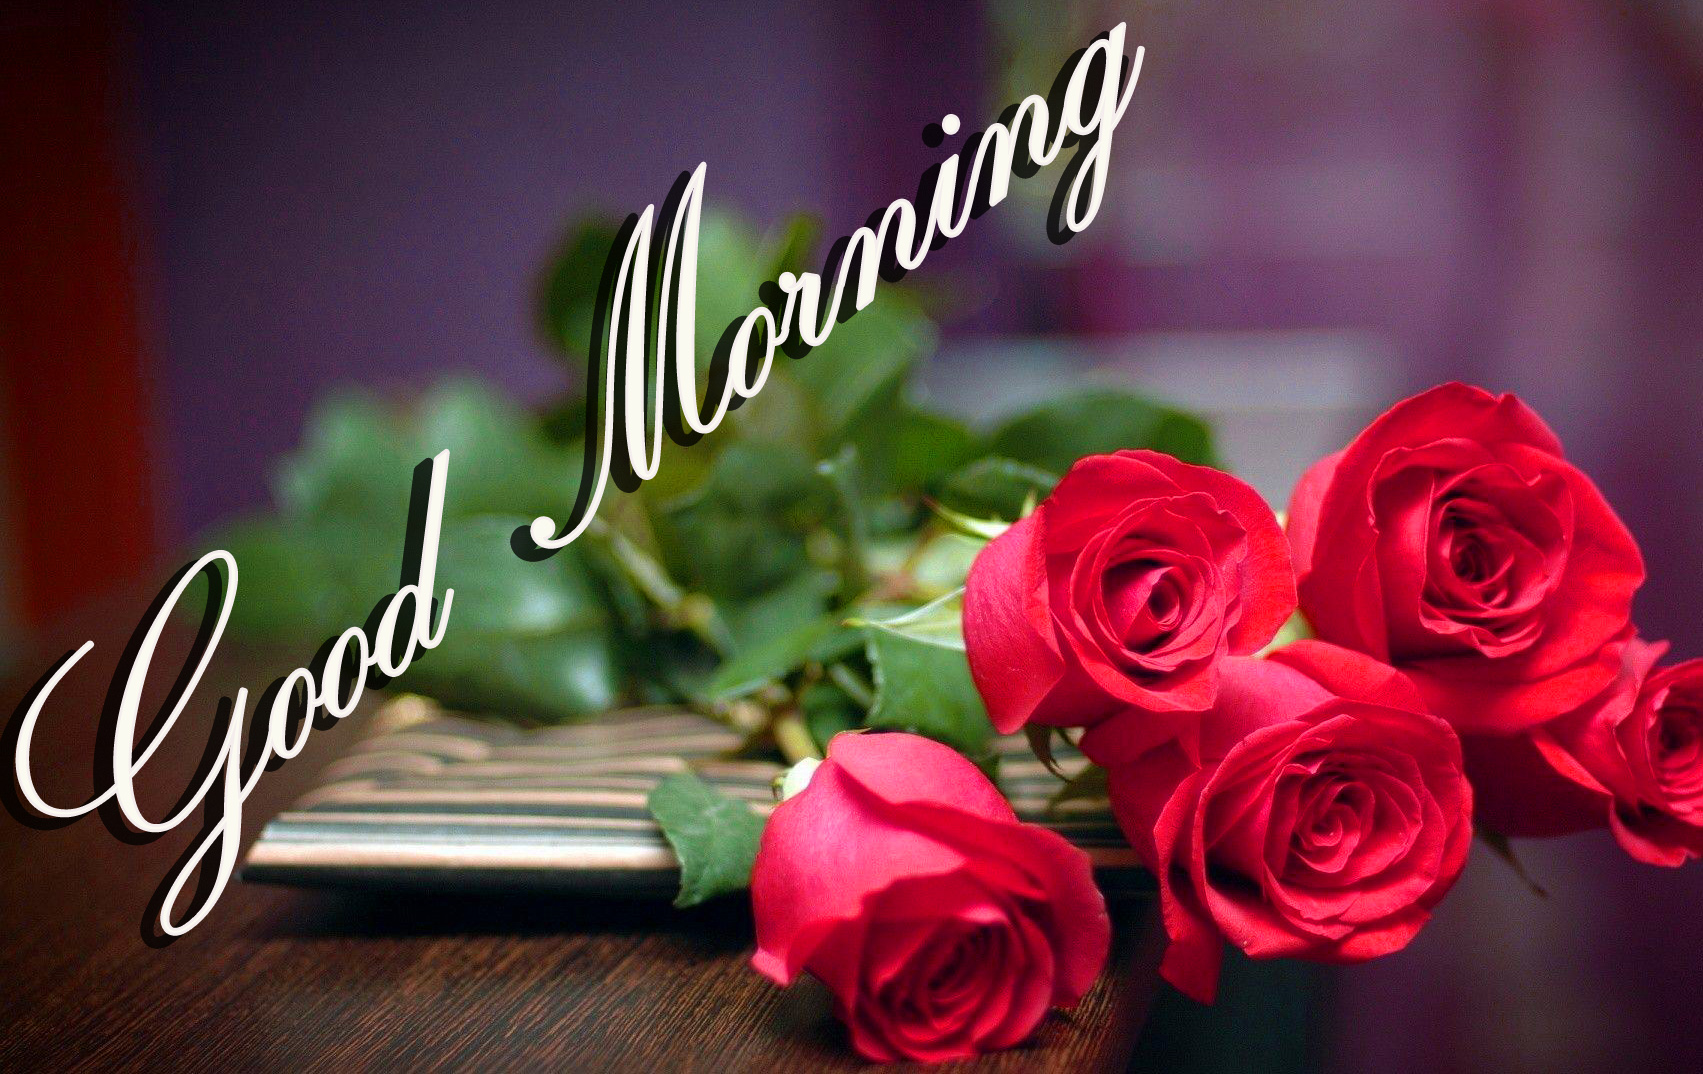 좋은 아침 벽지 다운로드,본문,정원 장미,폰트,꽃잎,분홍